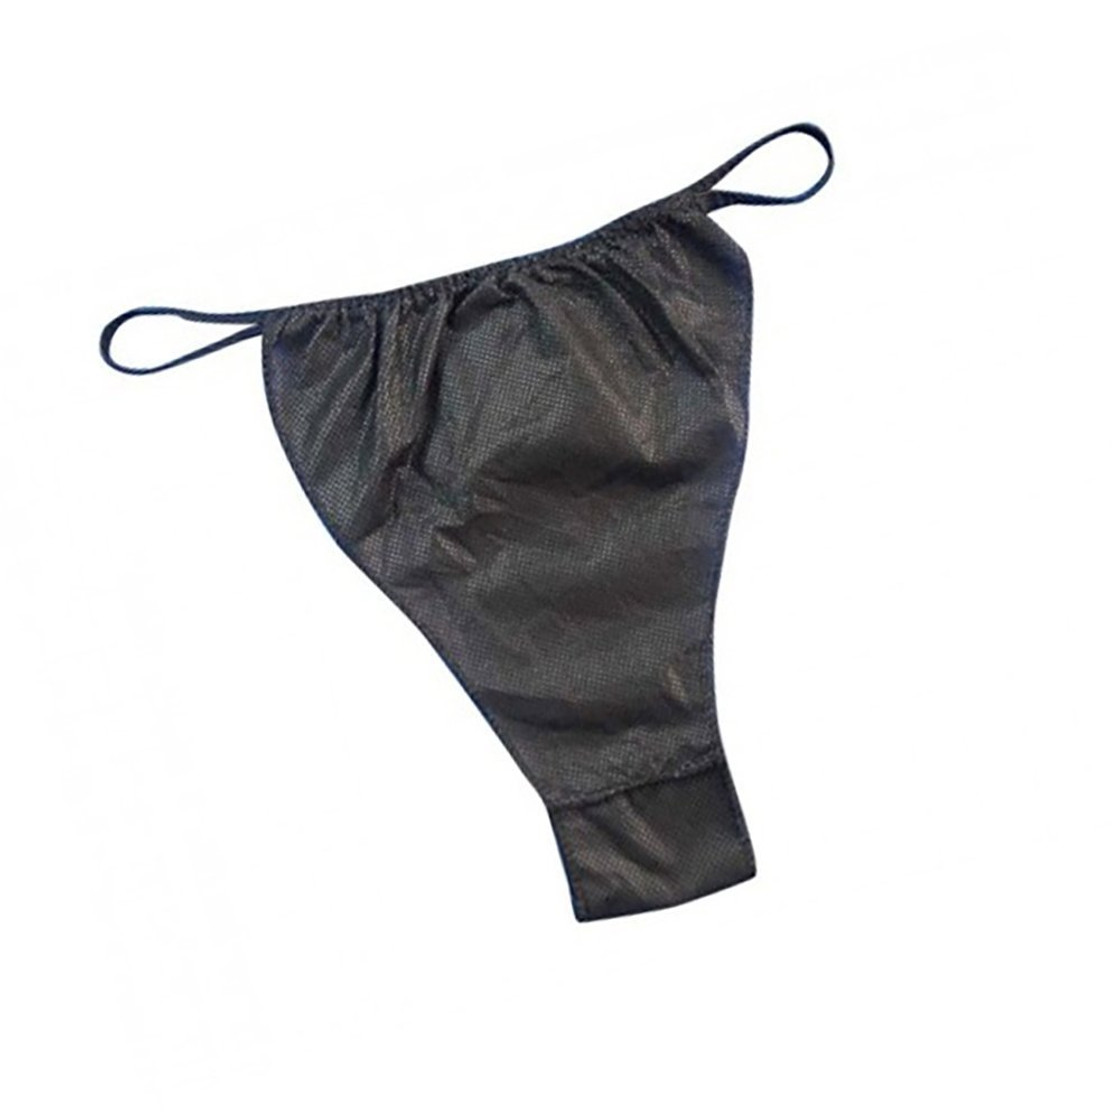 2 Pack bonded thong panties black & natural - WOMEN's Panties